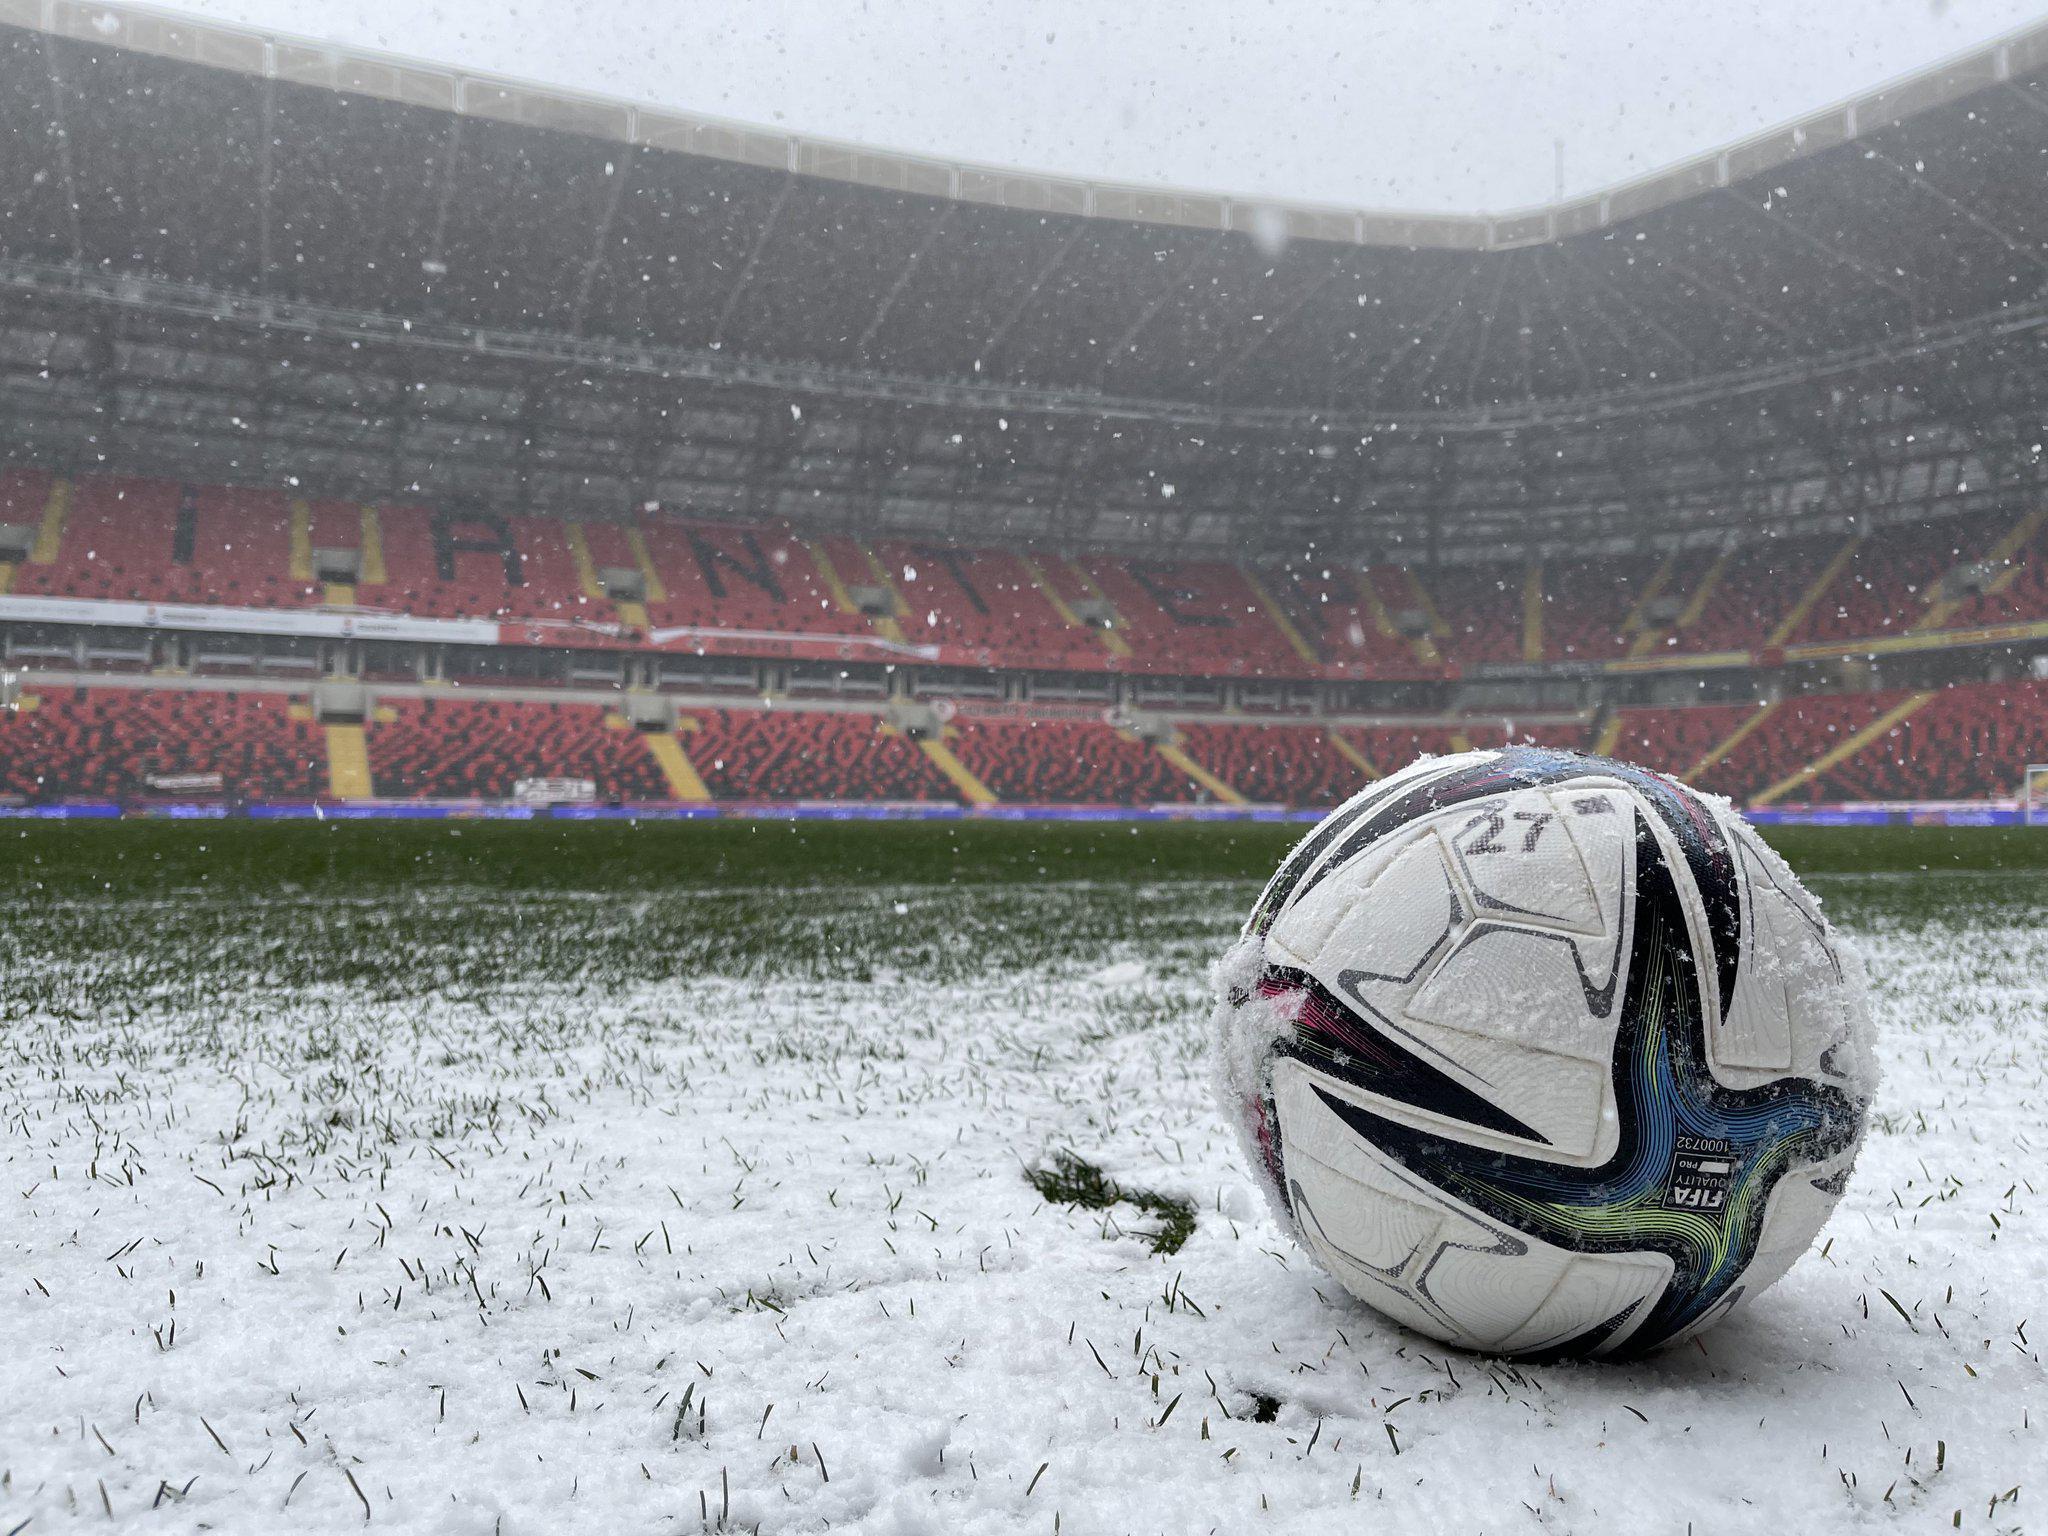 Son dakika | Gaziantep FK - ÖK Yeni Malatyaspor maçı ertelendi